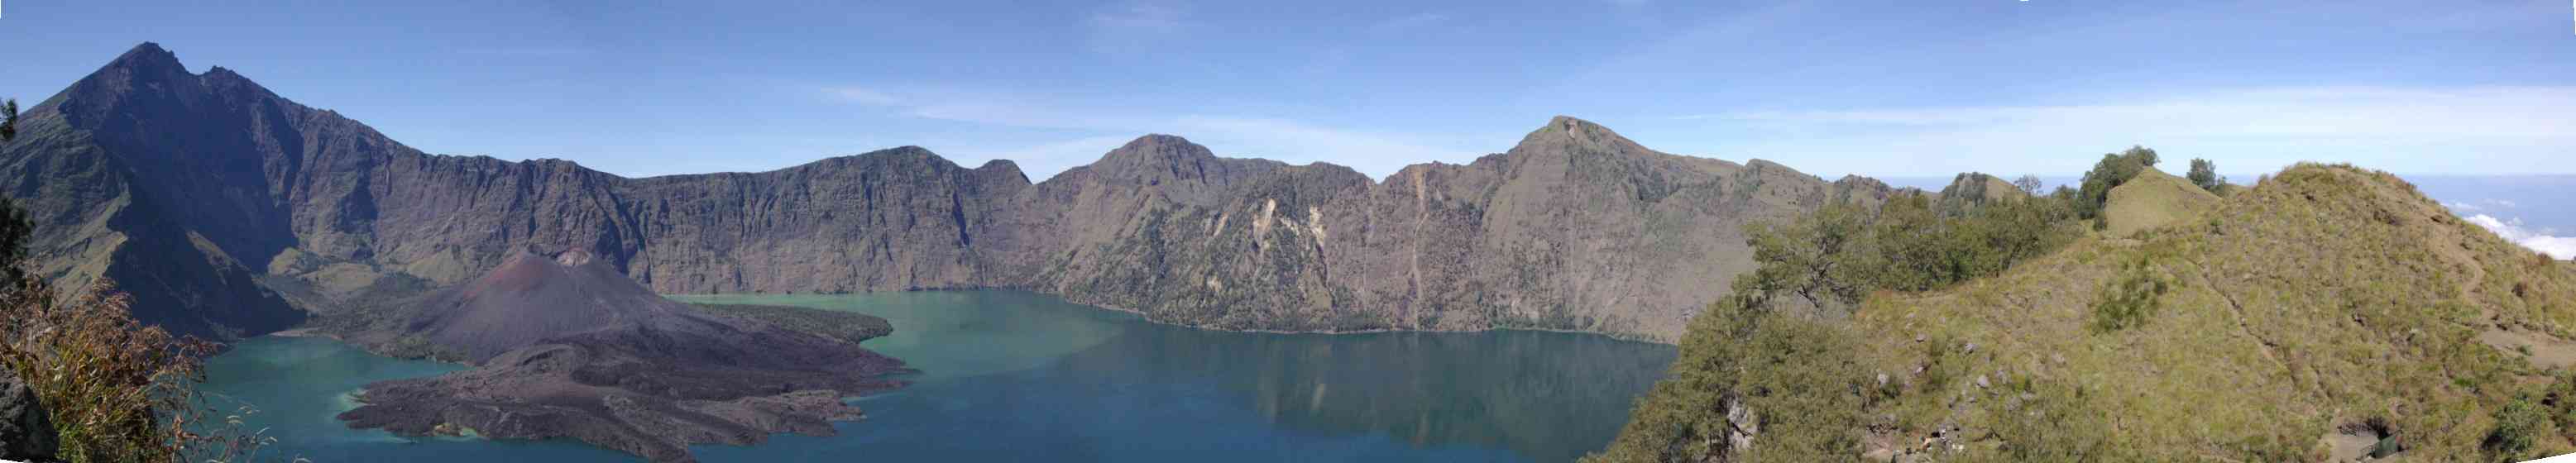 Panoramique du Rinjani, du lac Segara Anak et du cône du Barujari, depuis le col le 13 juillet 2007